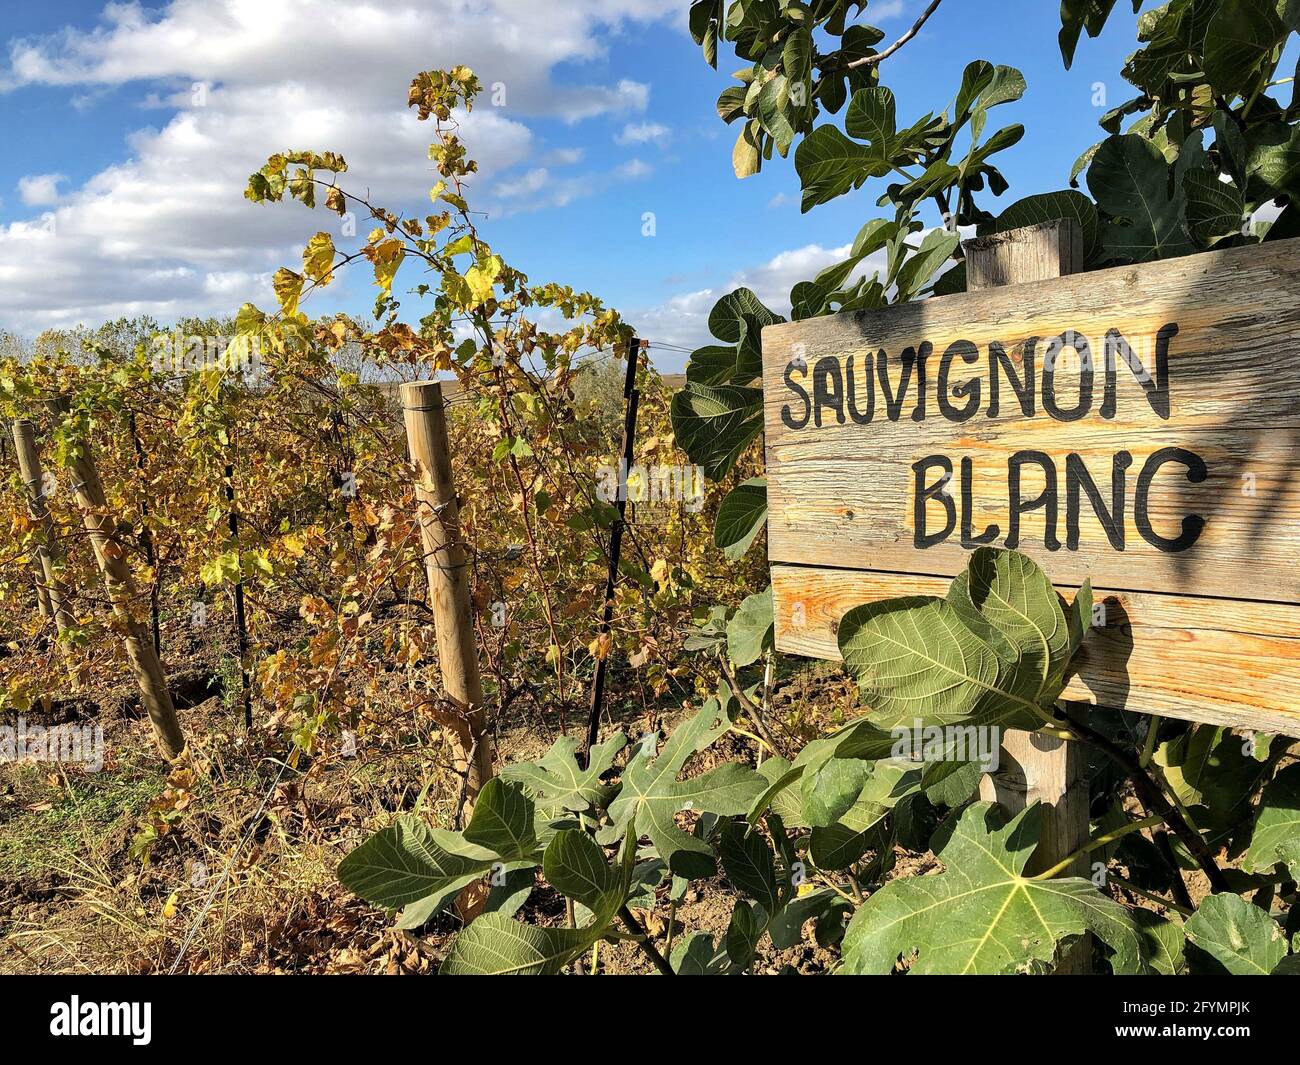 im Herbst steht in einem Weinberg ein schild mit dem aufschrift „saulwein Blanc“ Stockfoto